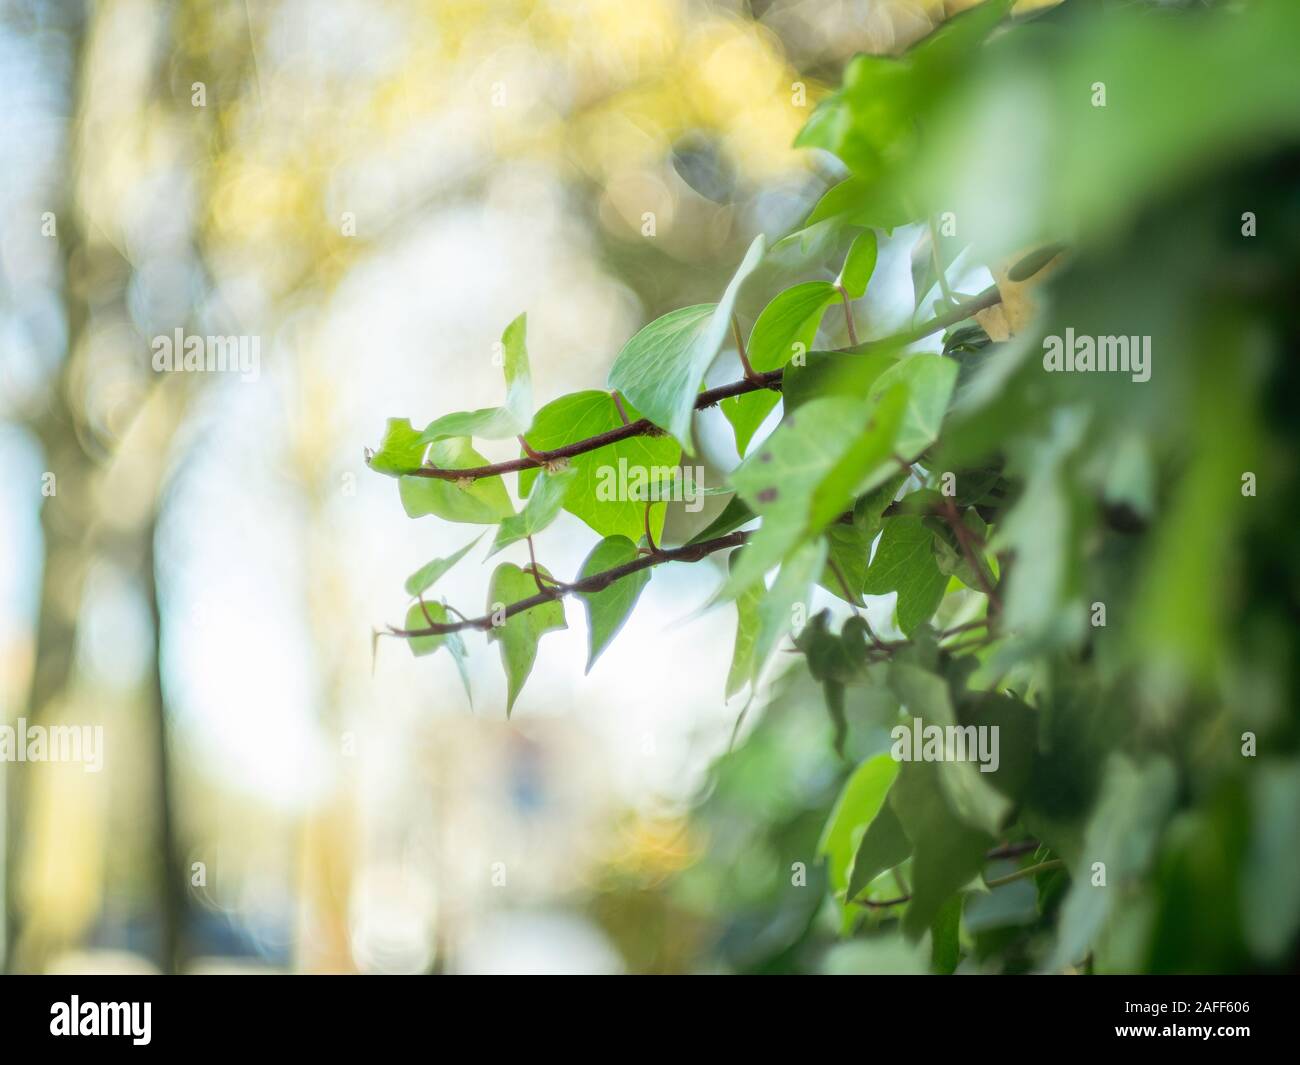 Detalle de hojas de hiedra con fondo borroso Foto de stock